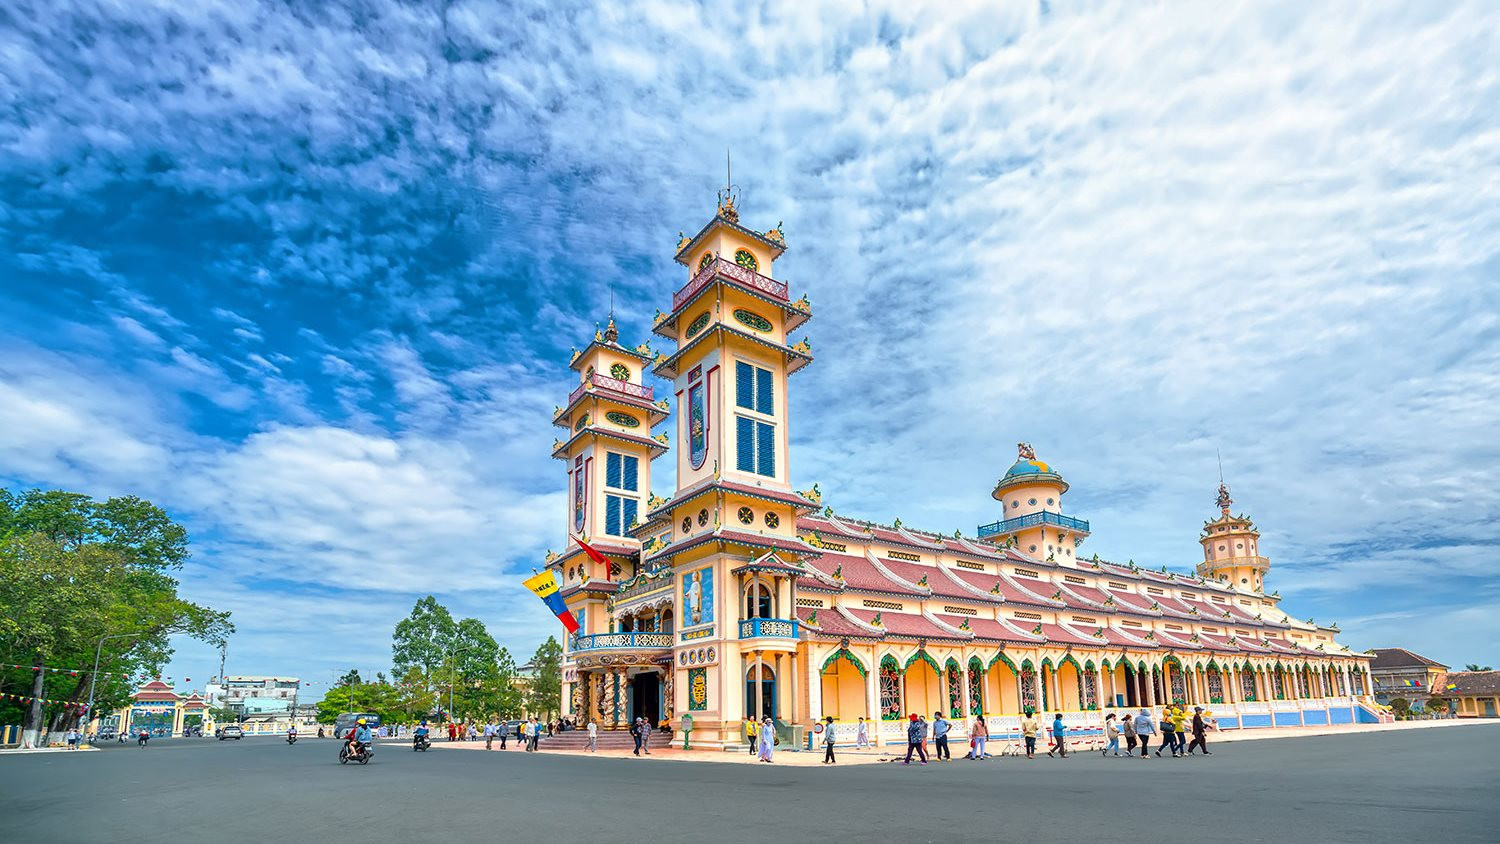 Tây Ninh đang có tiềm năng phát triển kinh tế - du lịch rất lớn